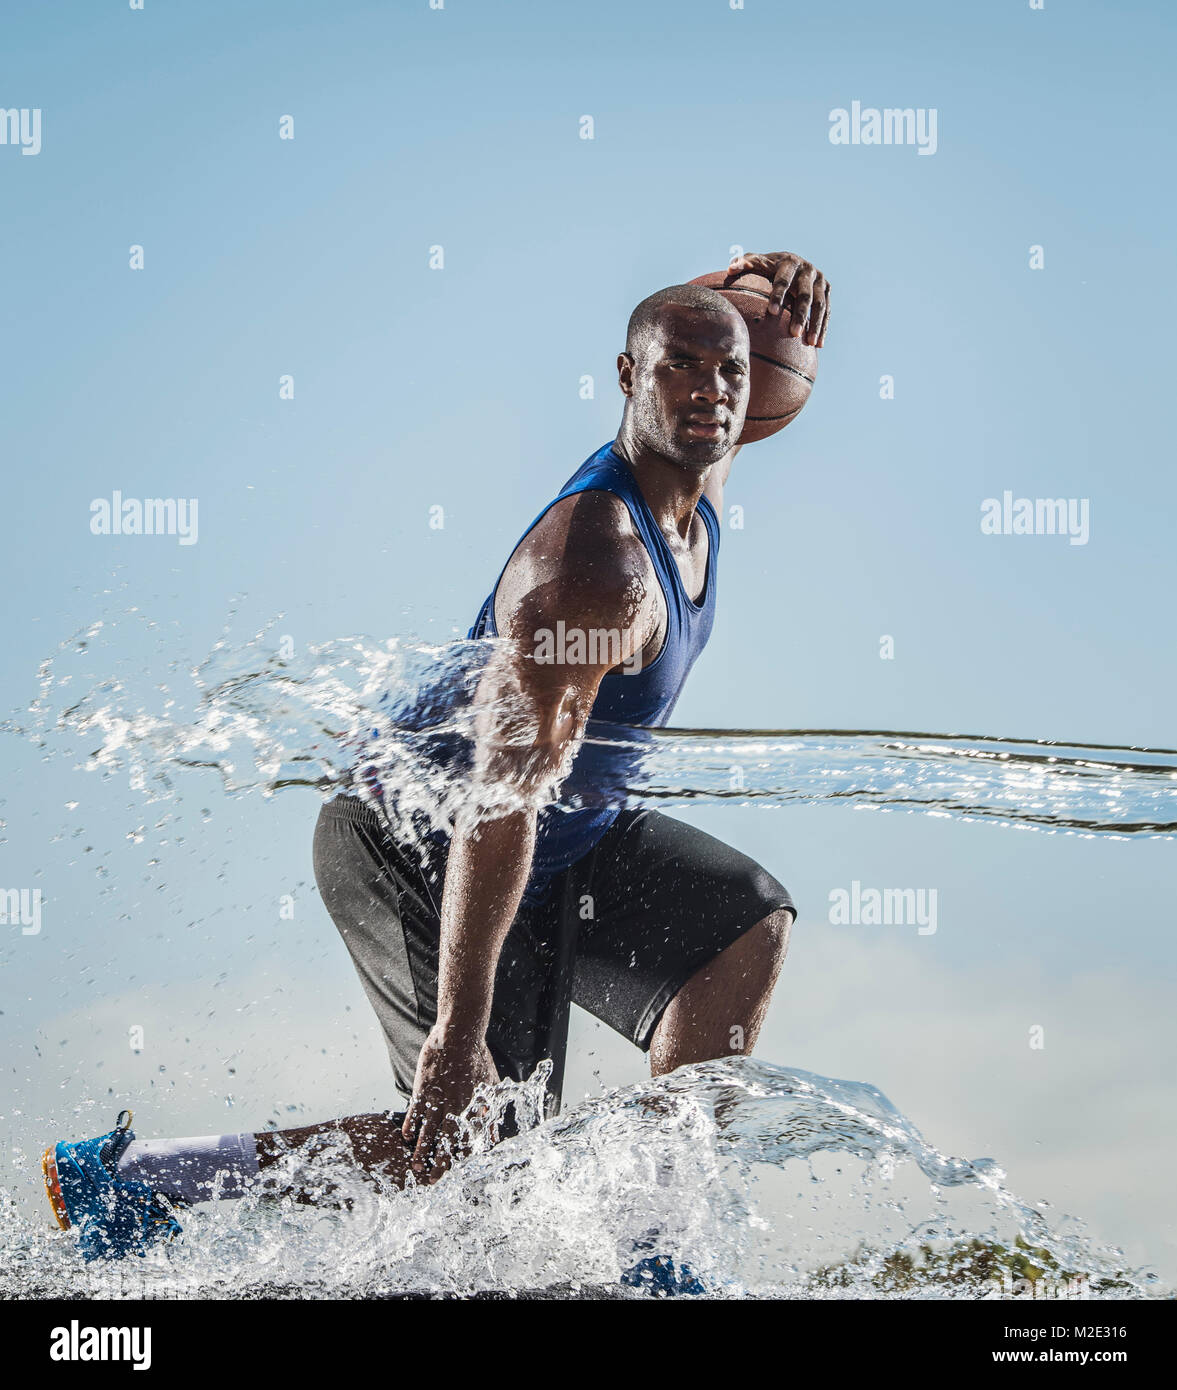 Water splashing on Black man dribbling basketball Stock Photo